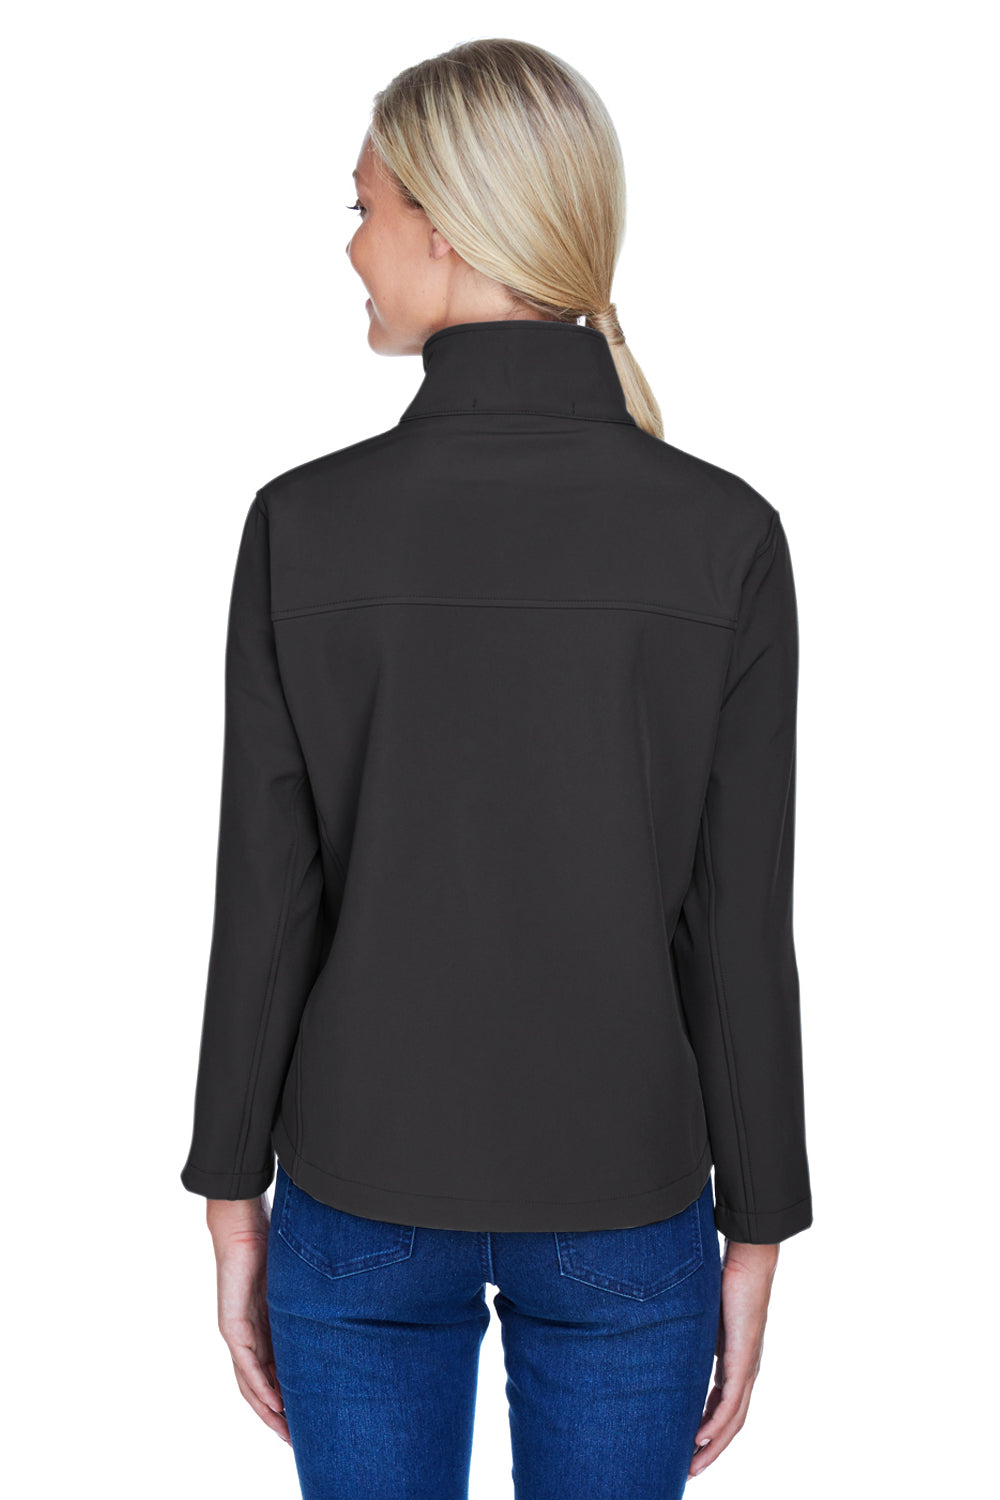 Devon & Jones D995W Womens Wind & Water Resistant Full Zip Jacket Black Back